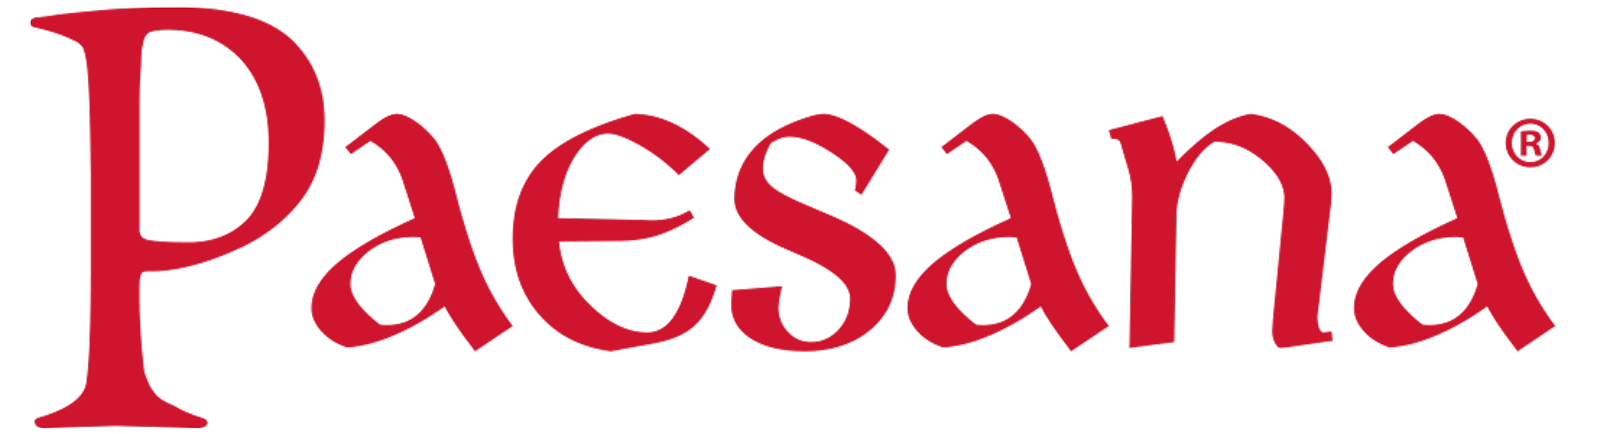 Paesana Logo